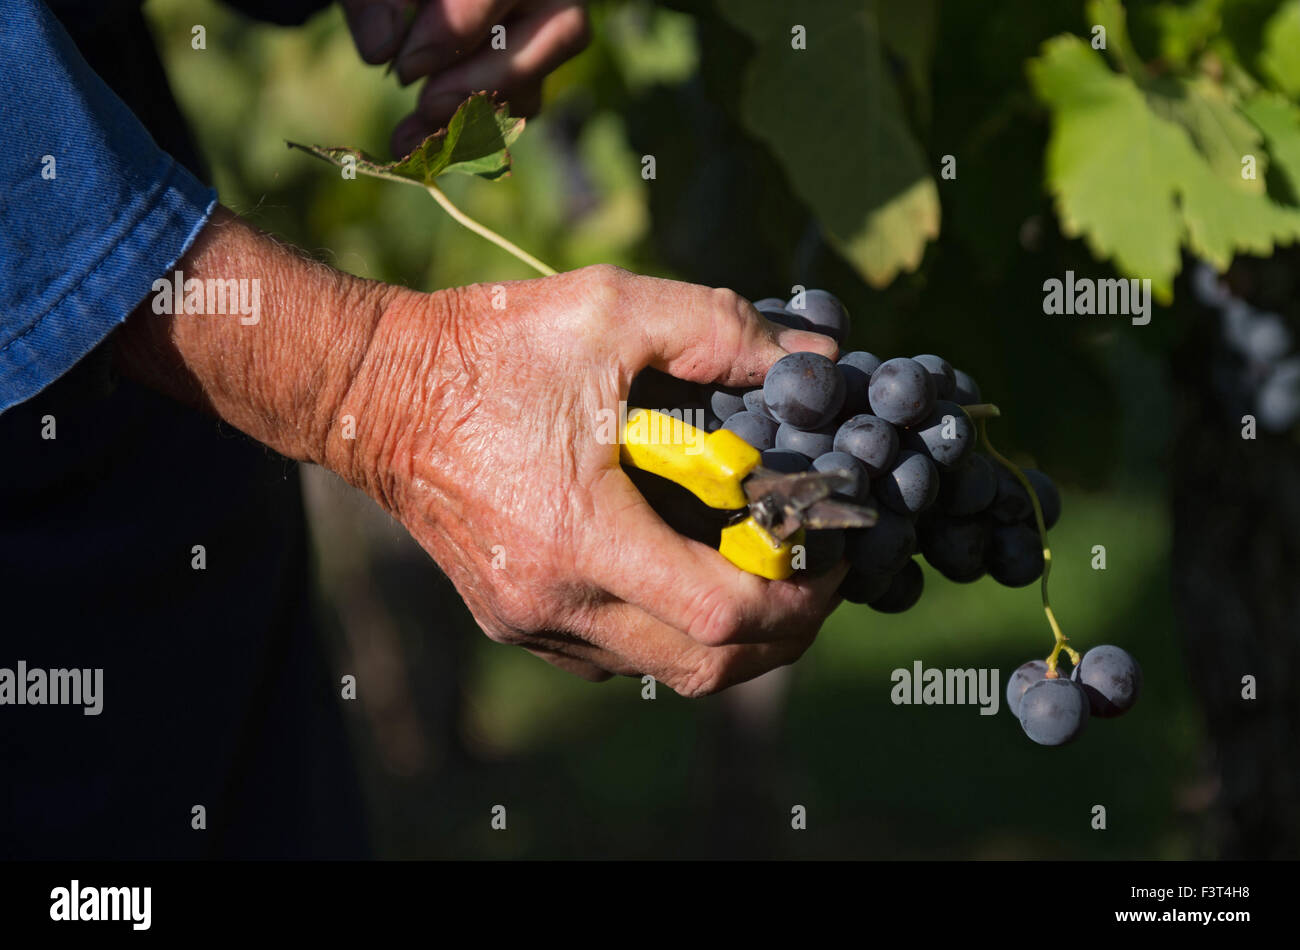 Stuttgart, Germany. 12th Oct, 2015. A vintner cuts Trollinger grapes from a vine in Stuttgart, Germany, 12 October 2015. Photo: MARIJAN MURAT/dpa/Alamy Live News Stock Photo